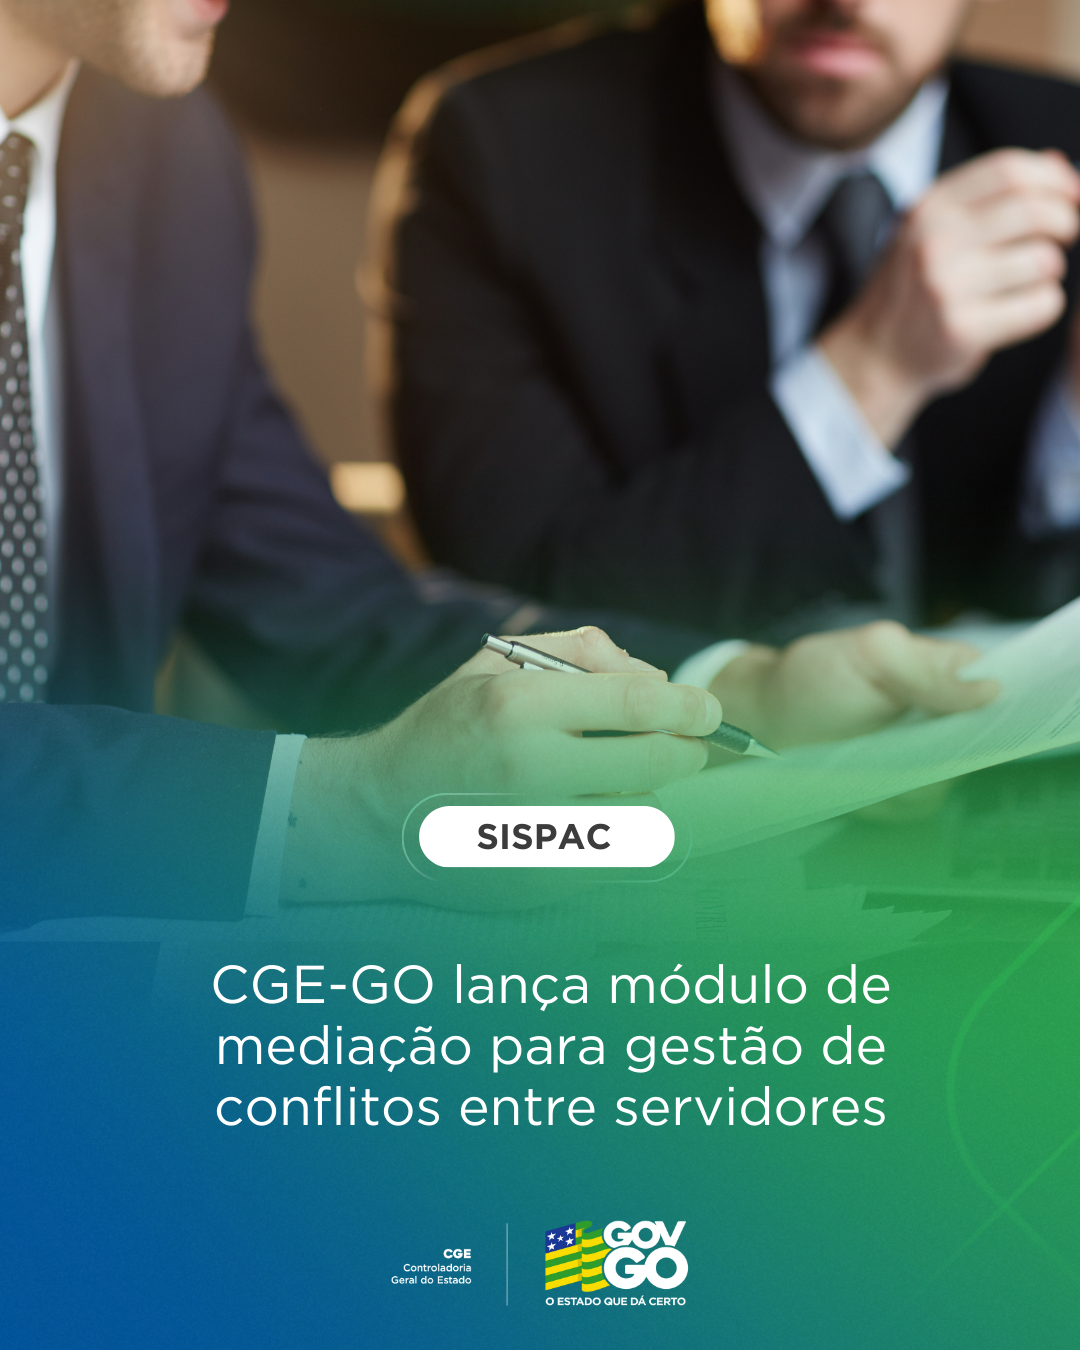 Goiás avança na resolução de conflitos com novo módulo Mediação no SISPAC 